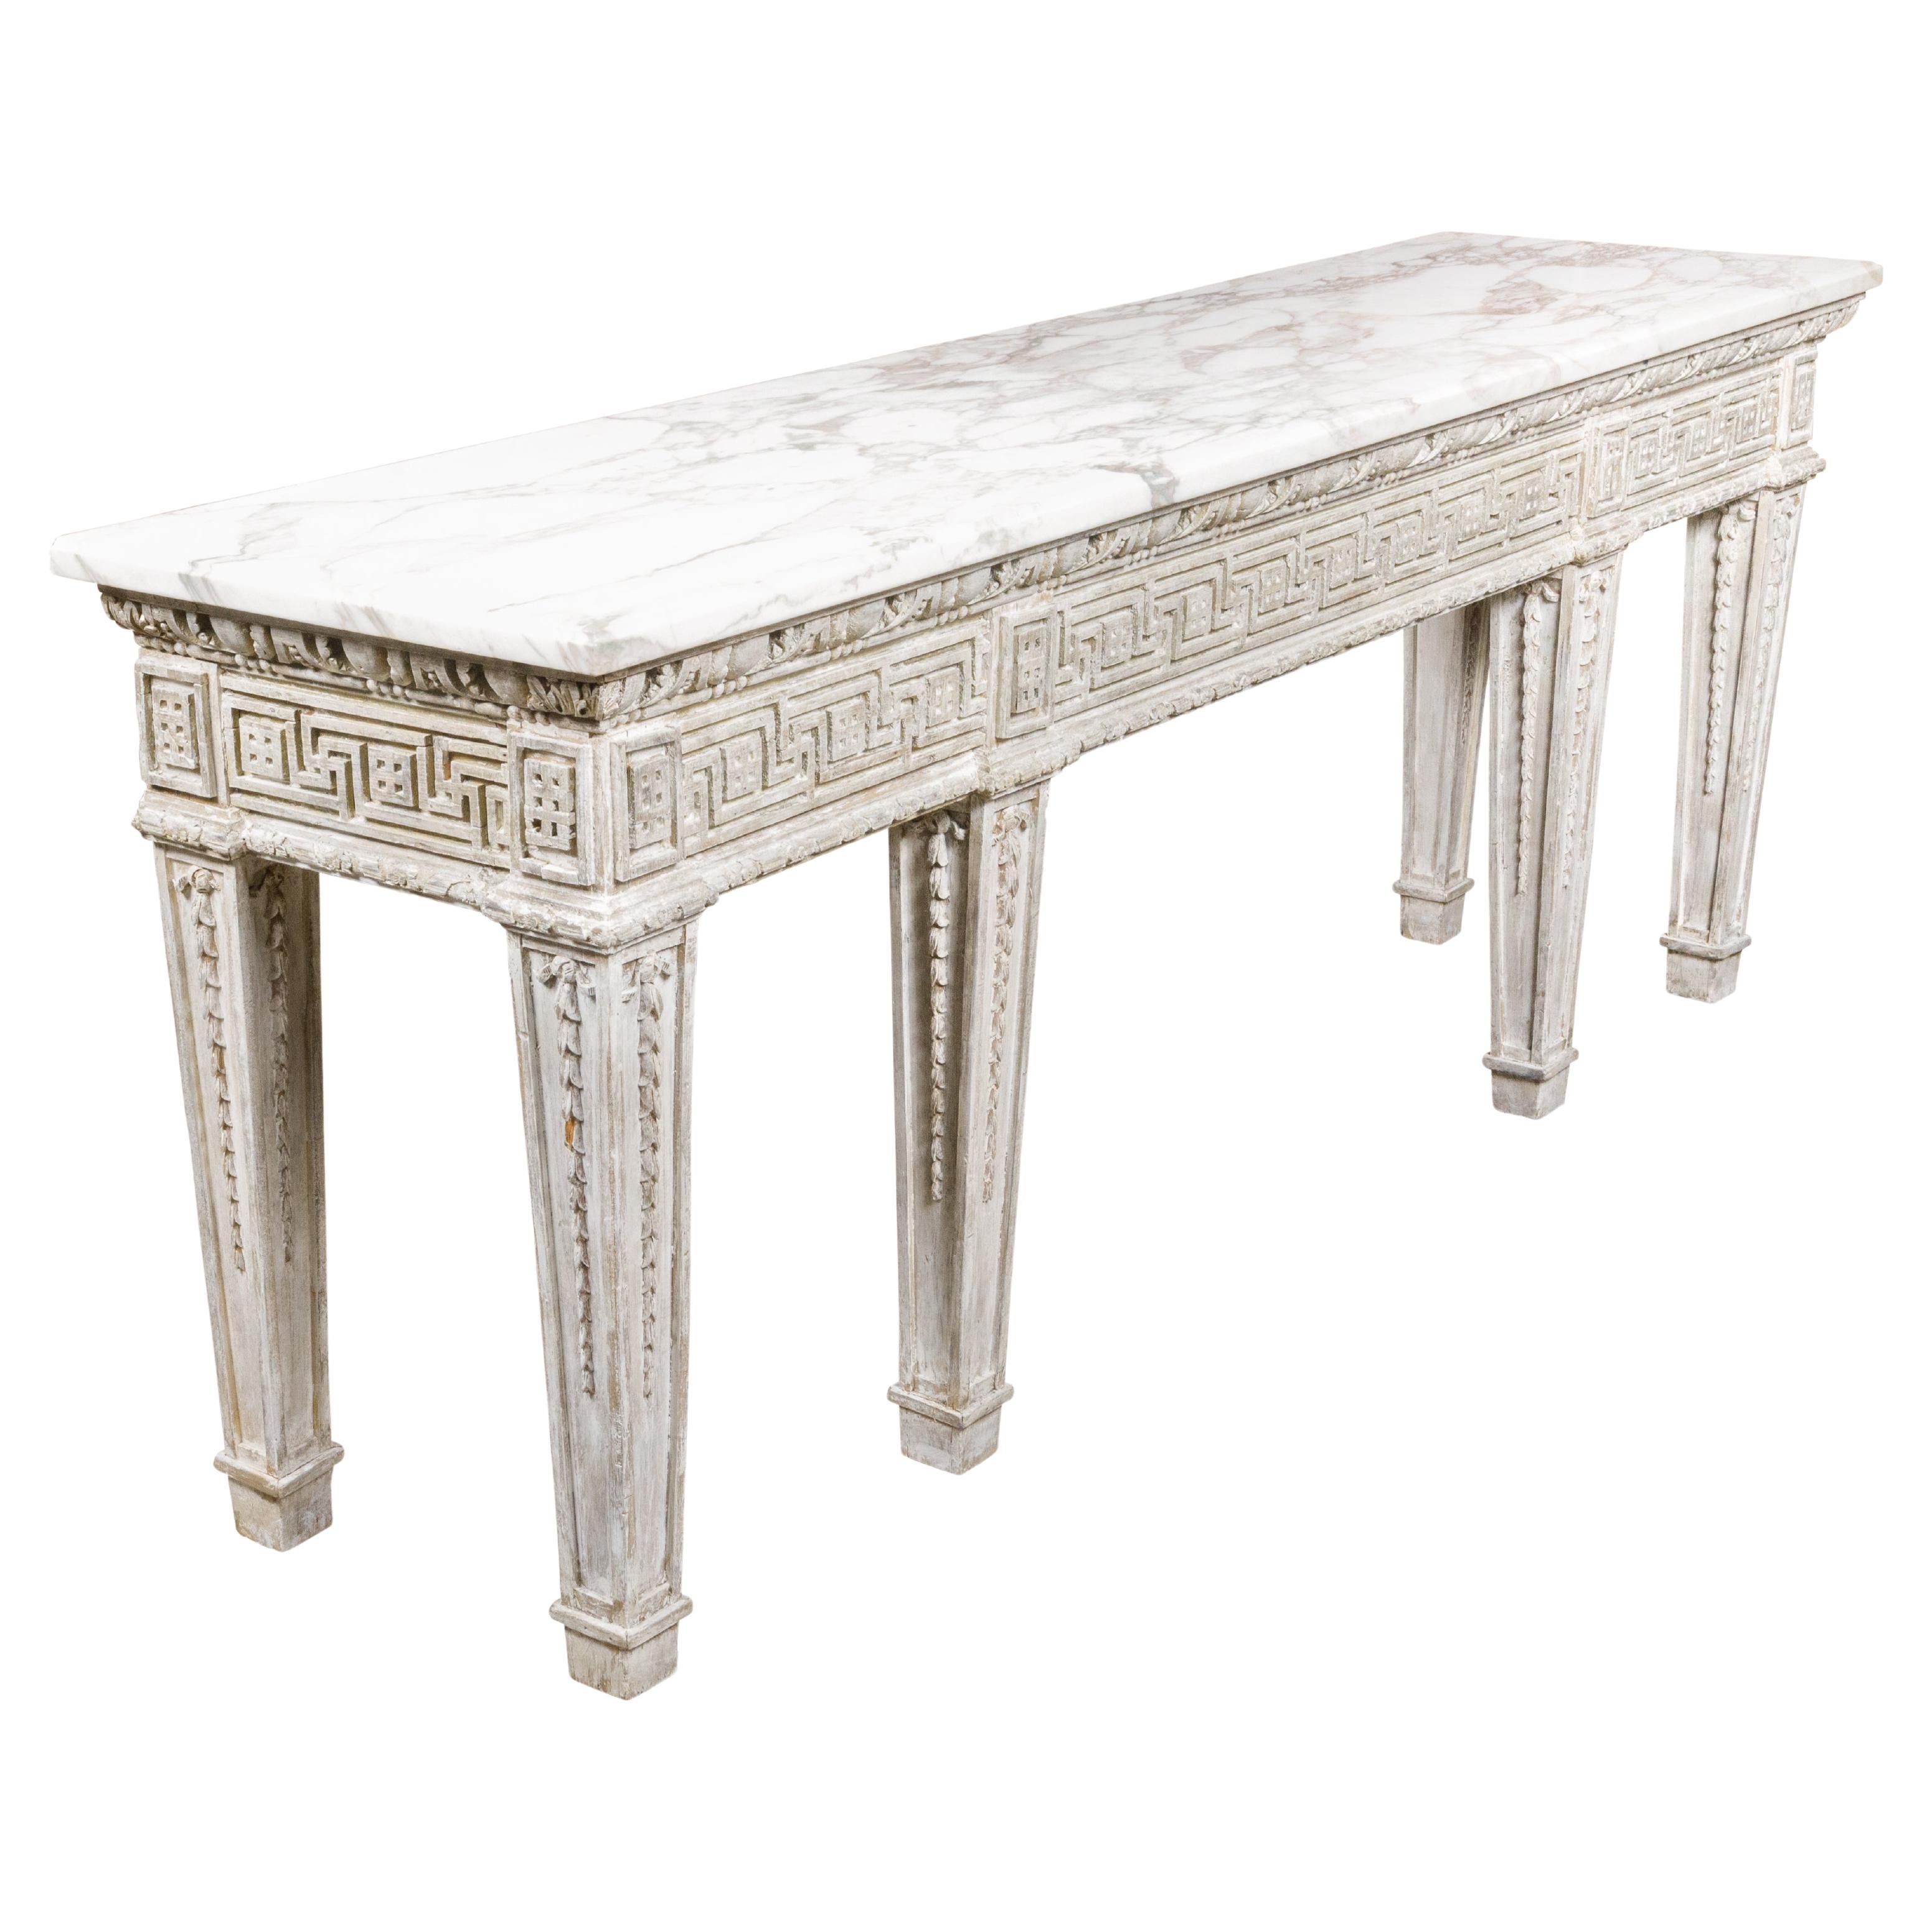 Table console anglaise du 19ème siècle avec clé grecque sculptée et plateau en marbre blanc